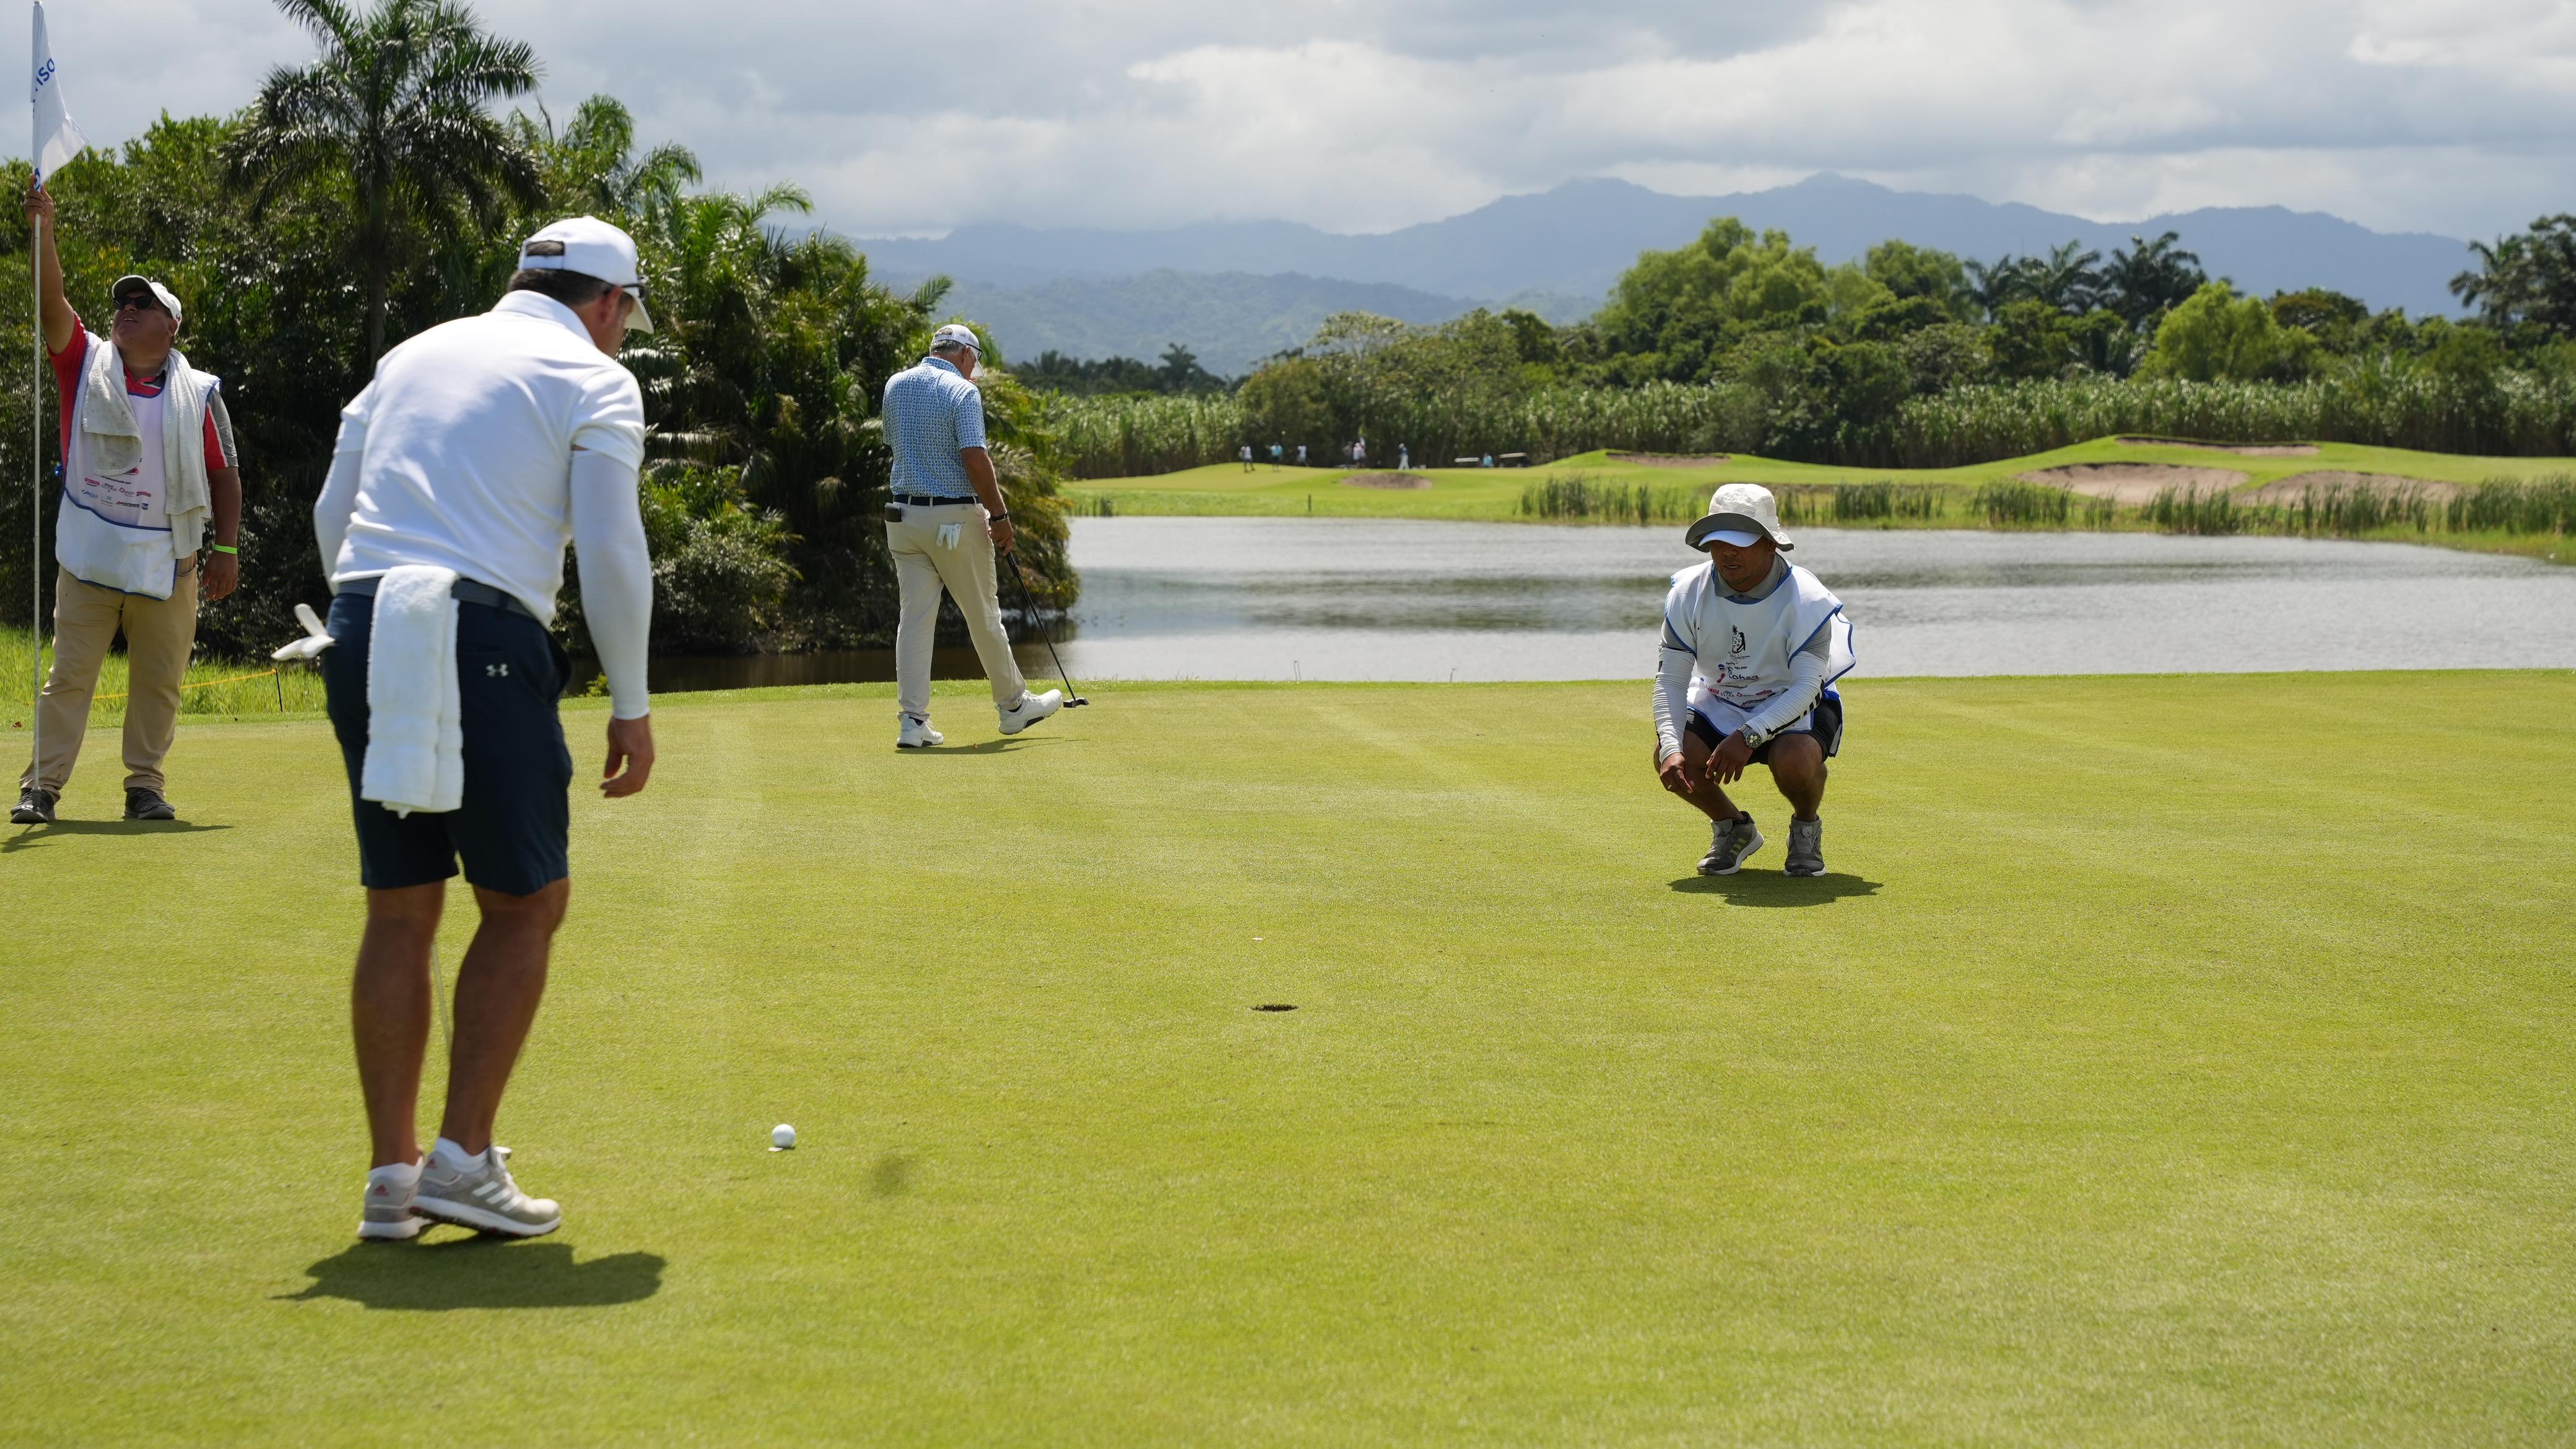 Tela se viste de fiesta deportiva al ser la sede del LXXXI Torneo Interclubes de Golf de Centroamérica y Panamá 